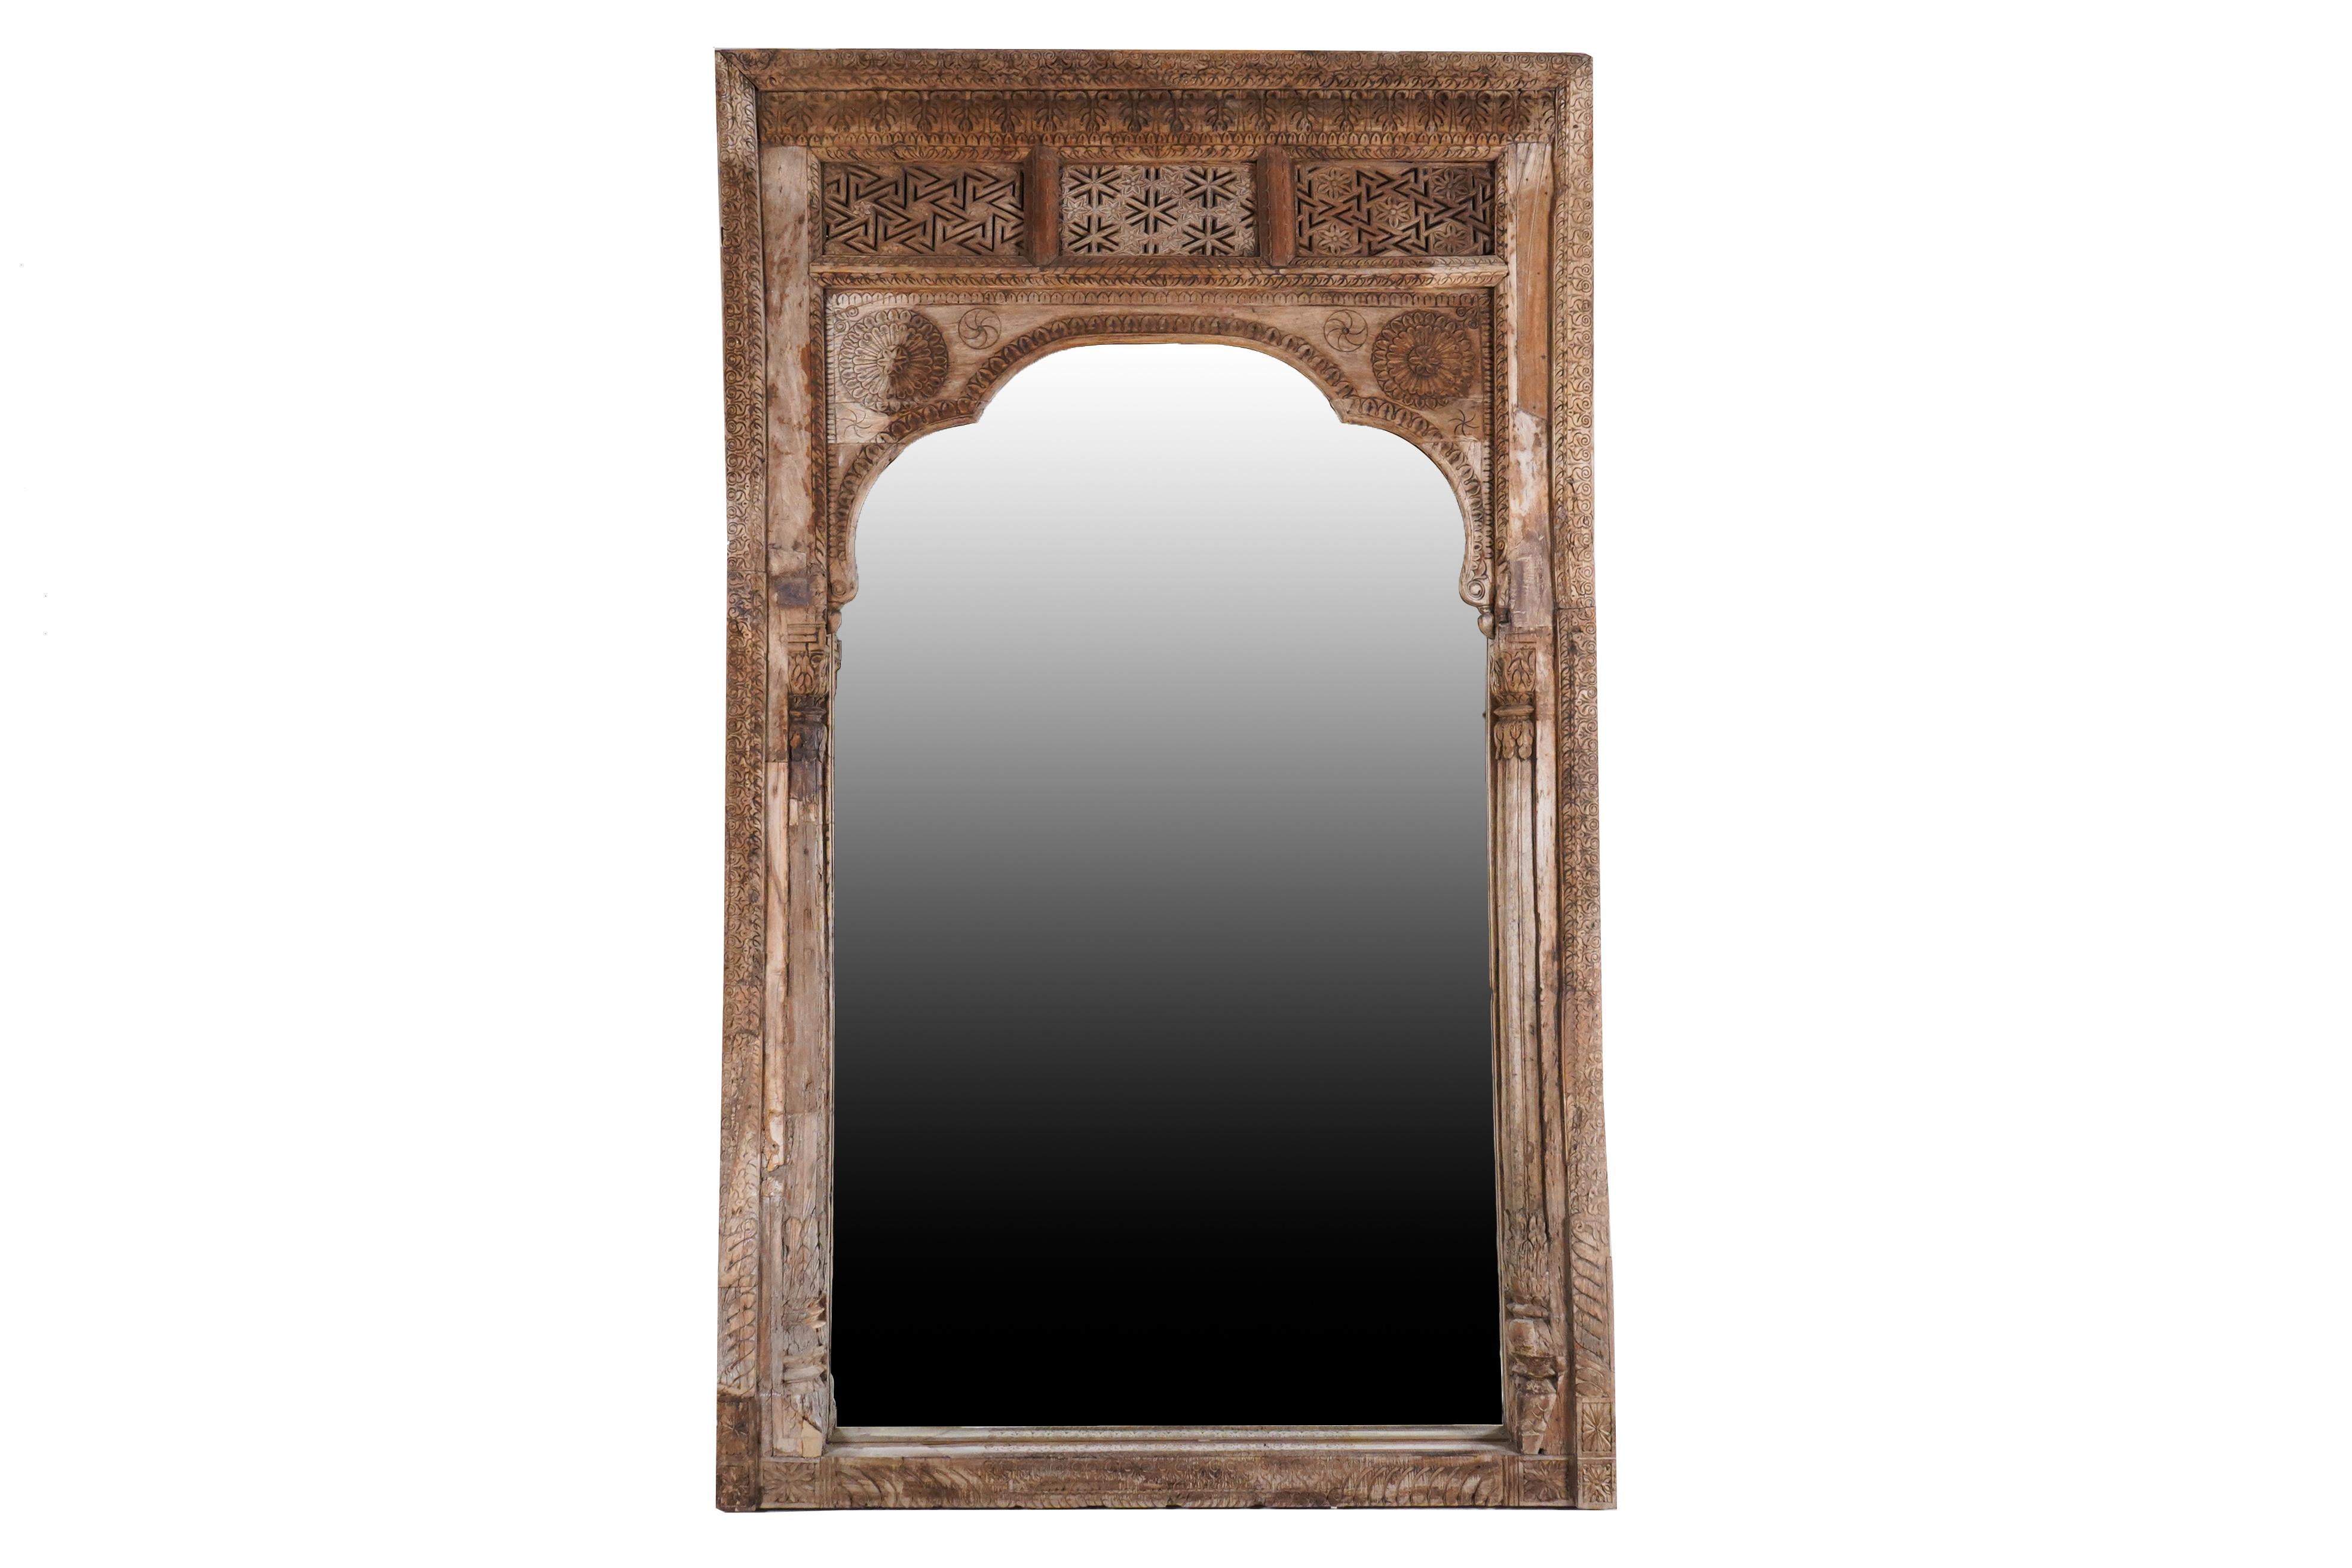 Ce cadre de miroir sculpté de manière complexe était à l'origine un cadre de fenêtre dans une magnifique demeure du Gujarat, en Inde. Il est fabriqué en bois de Sheesham et a été peint à l'origine. Après le démantèlement du manoir, toutes les